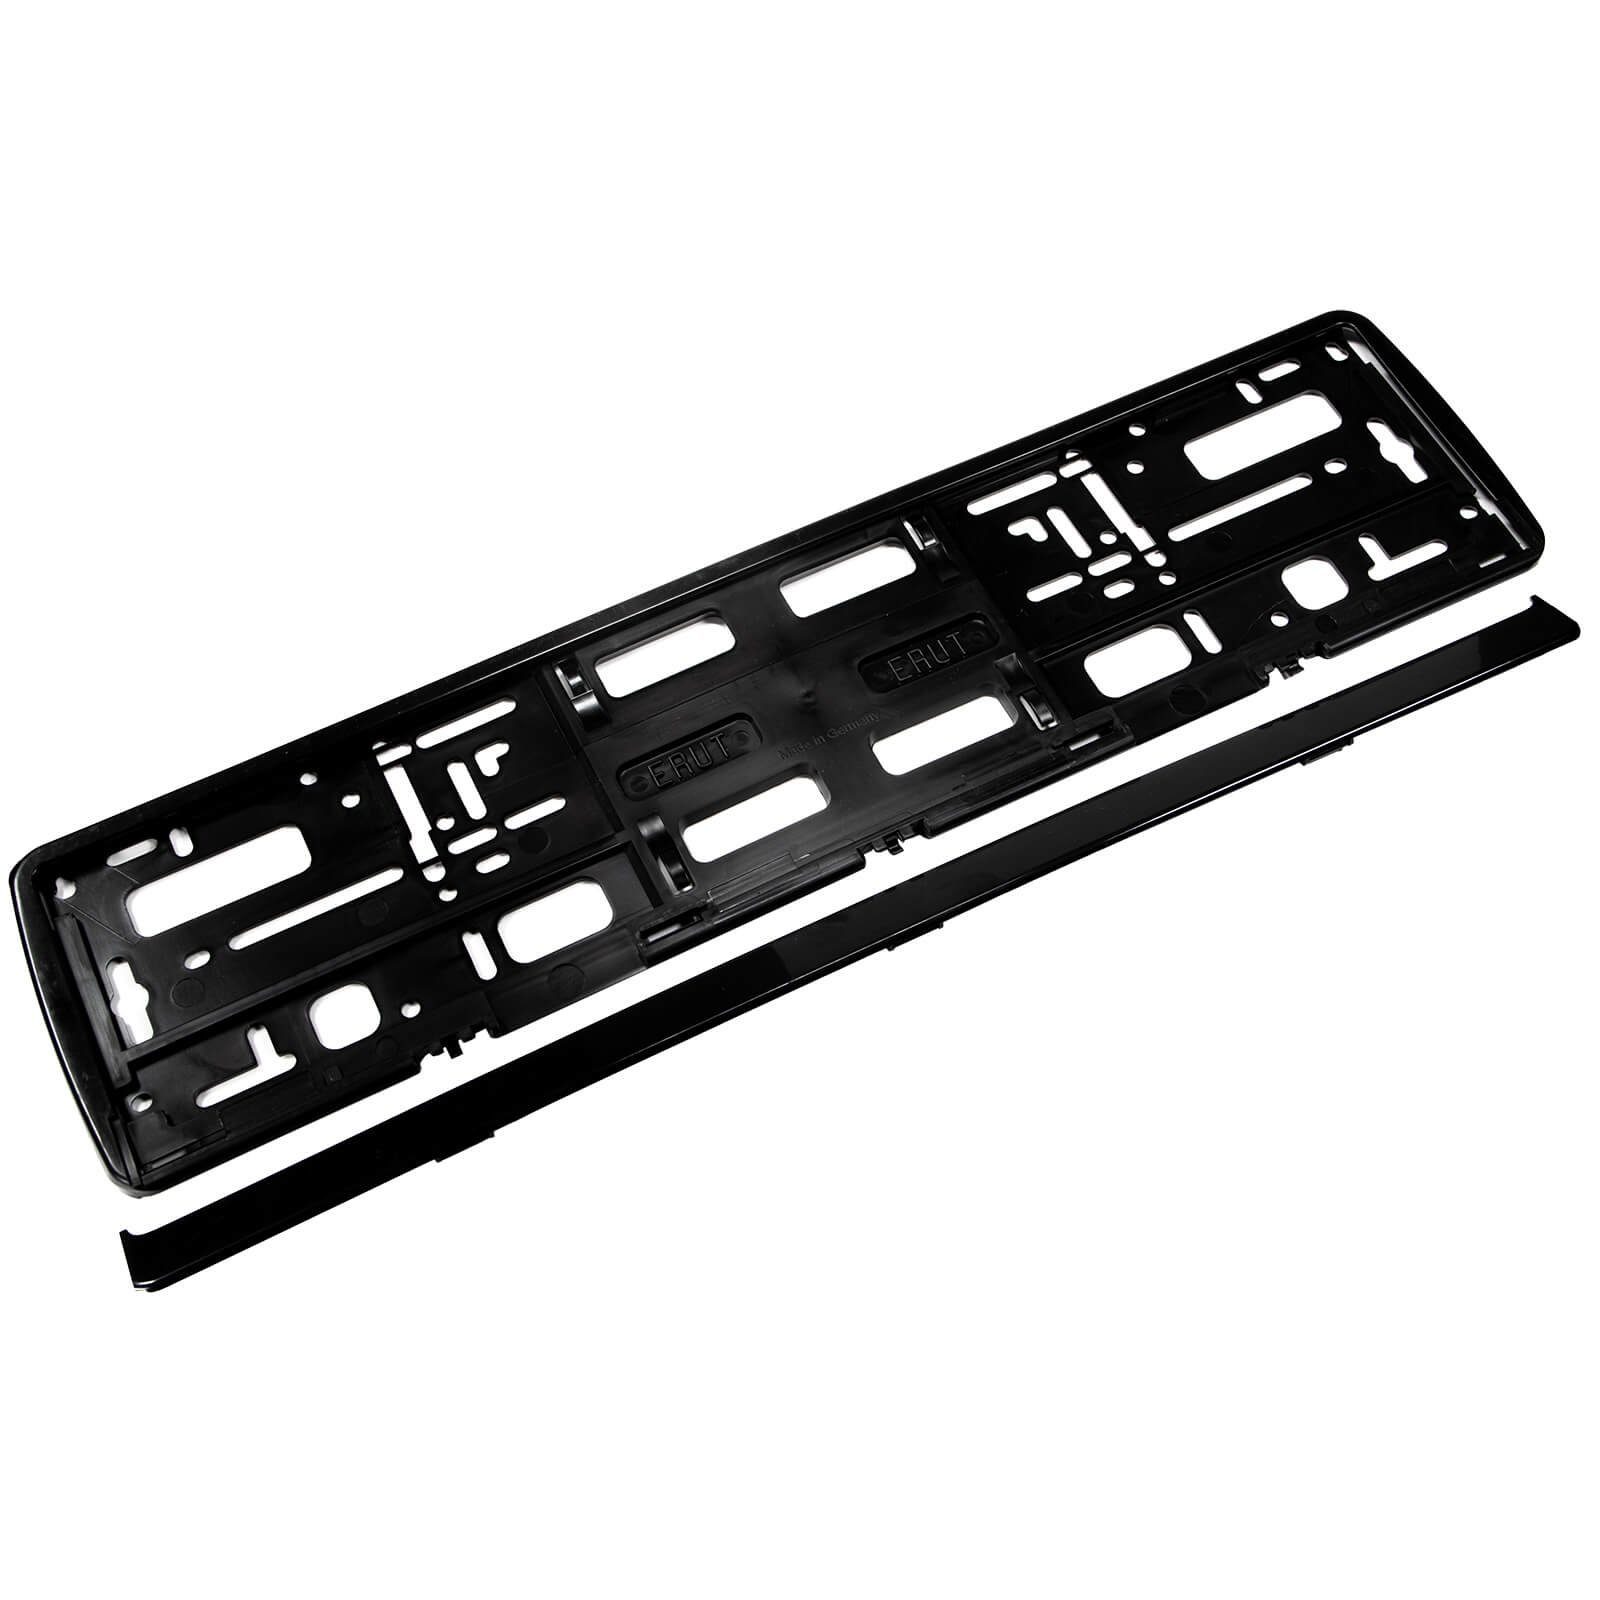 Utsch Ag Kennzeichenhalter 2er Set Kennzeichenhalter schwarz ERUT Utsch für  Standard-Kennzeichen, (2-St), für Standard-Kennzeichen 520mm x 110mm